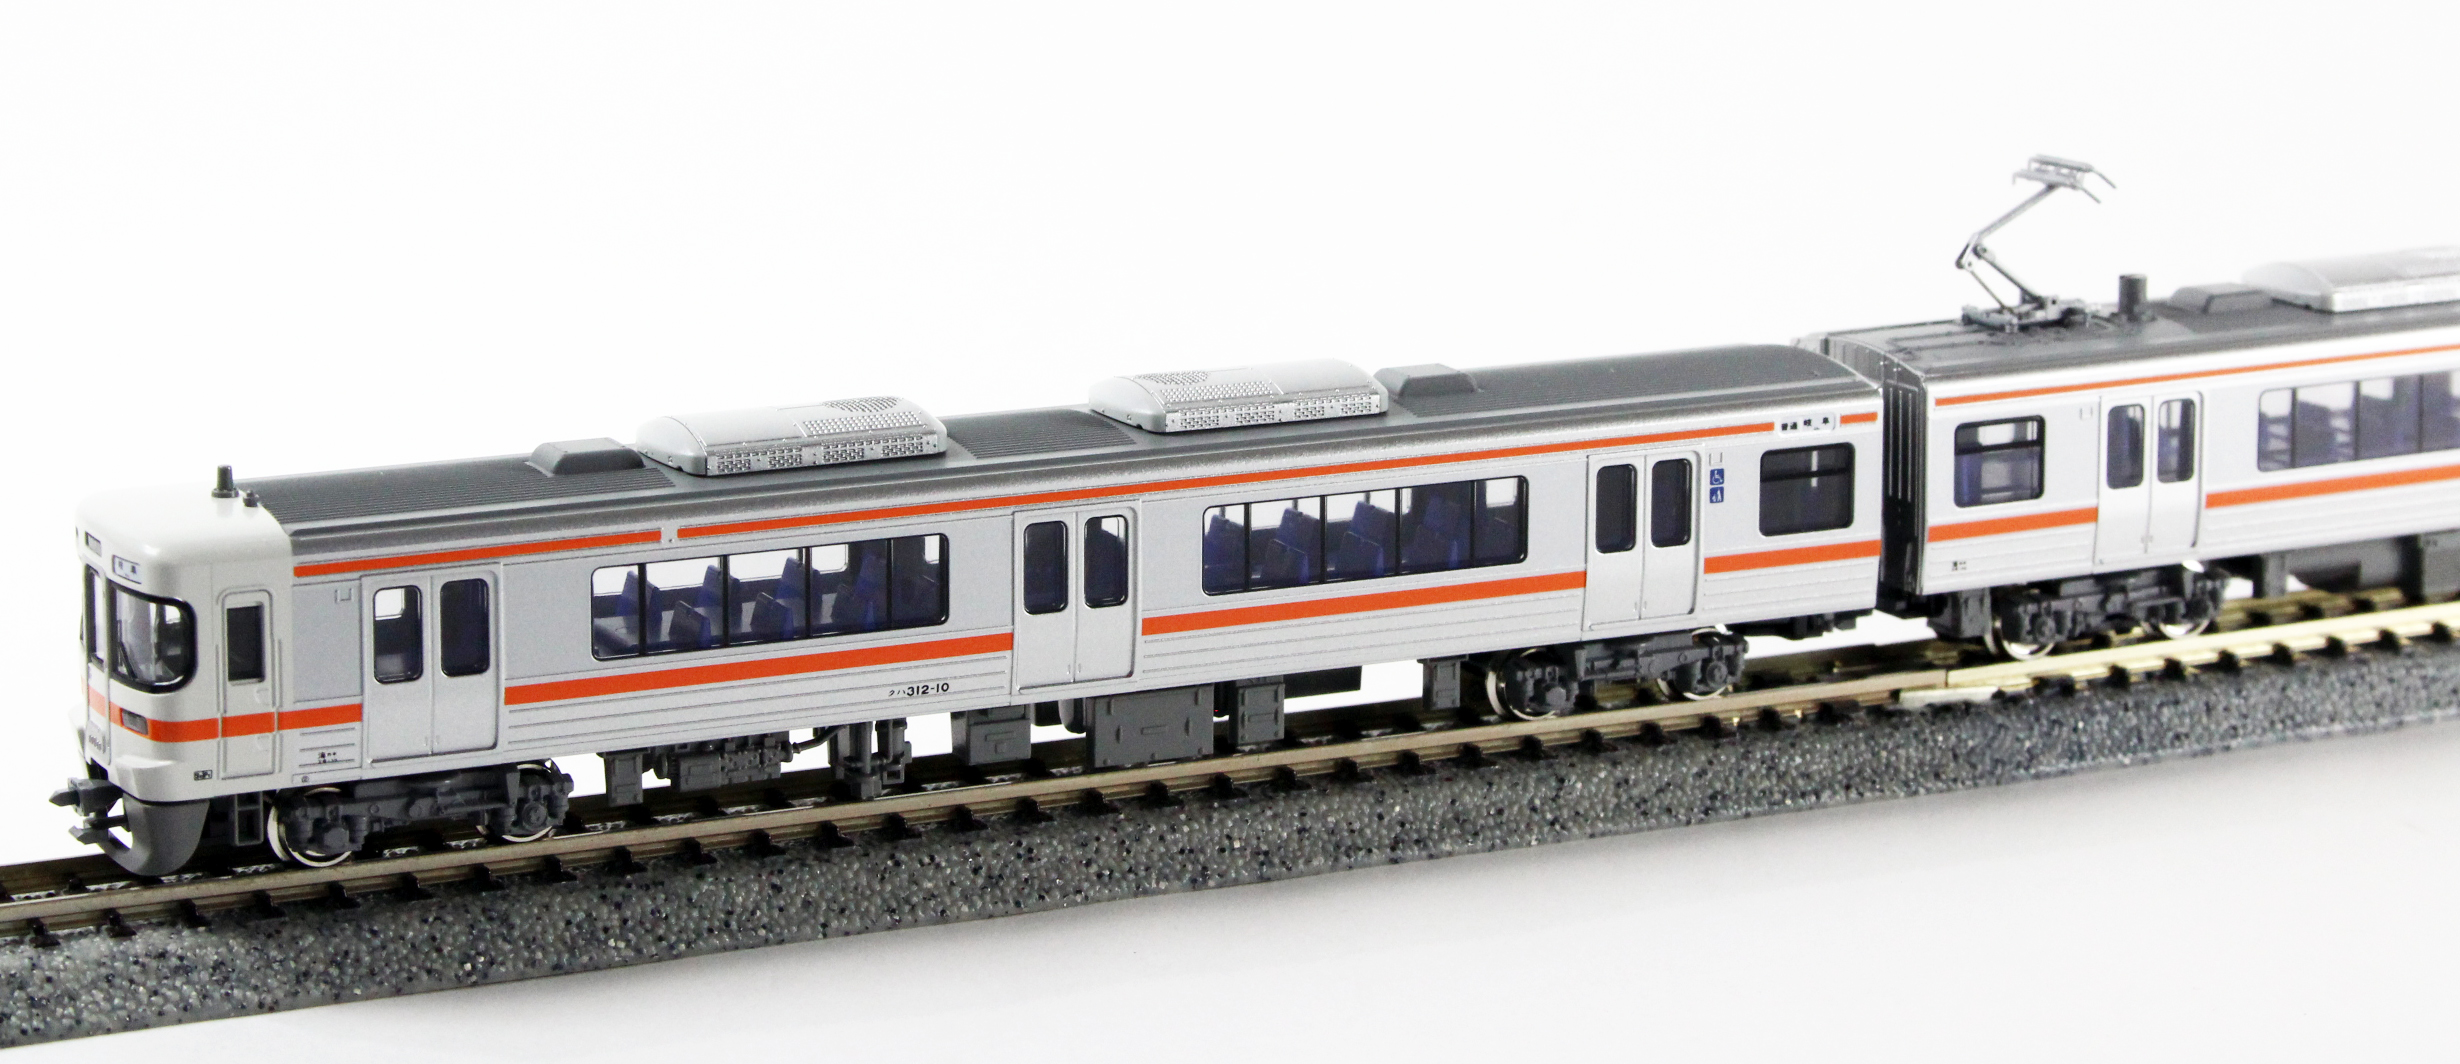 カトー 10-1382 313系0番台 東海道本線 4両セット 鉄道模型 Nゲージ 